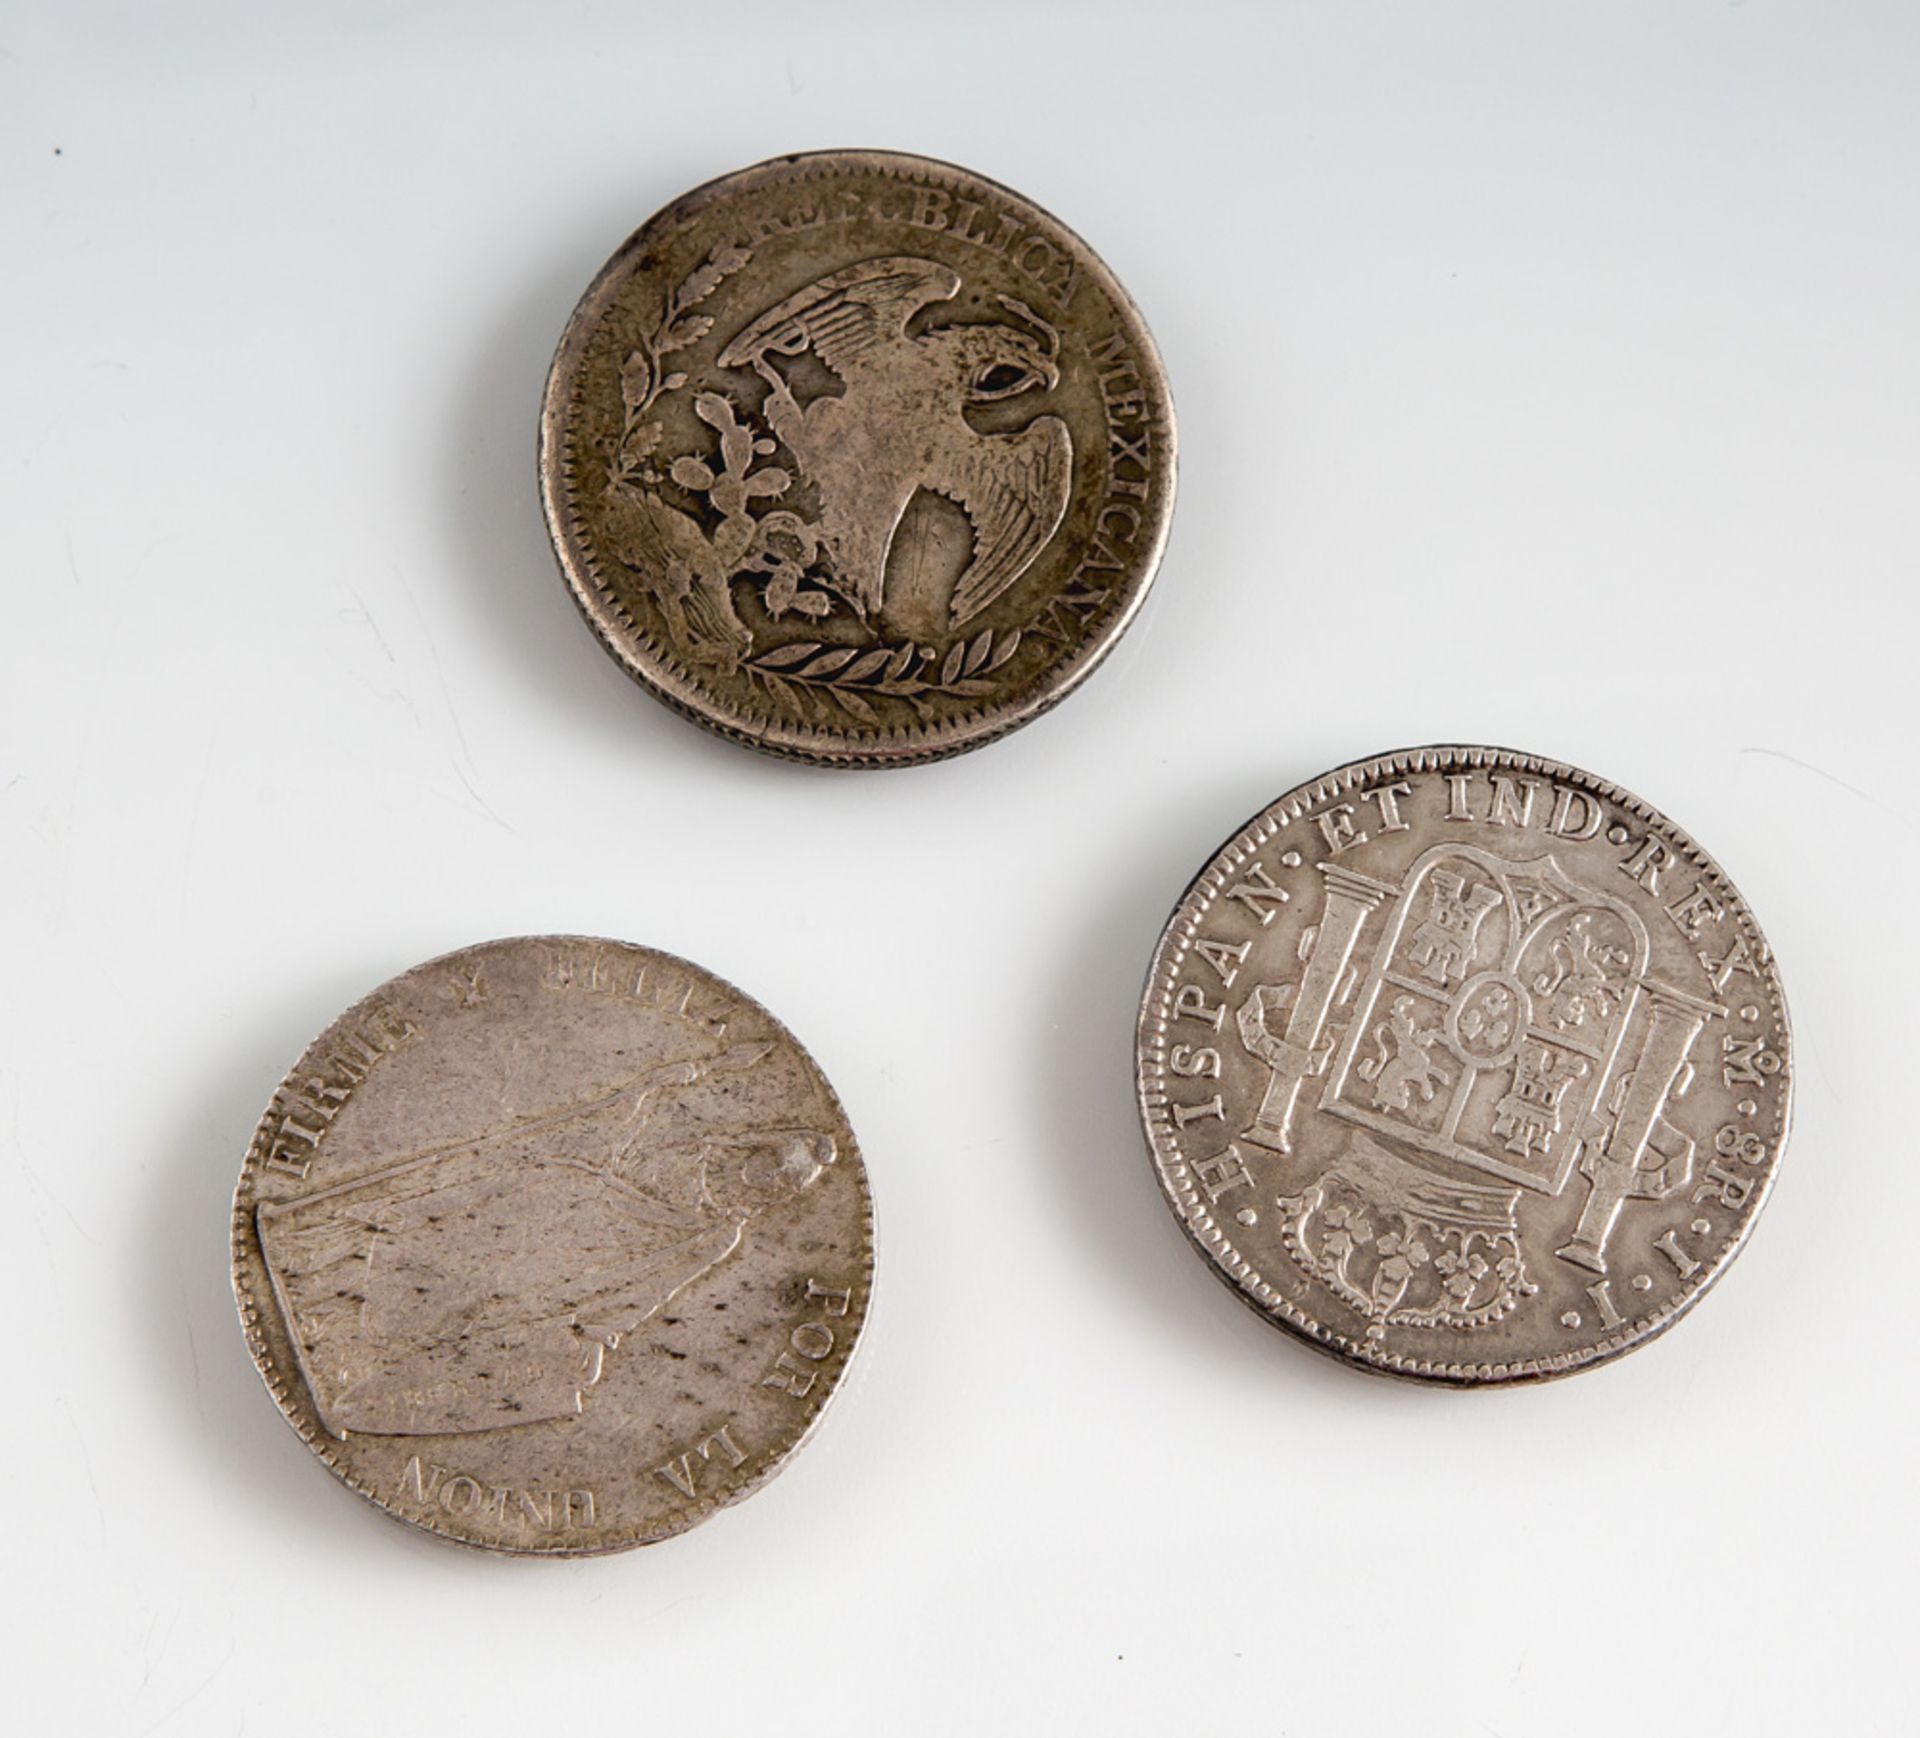 Konvolut von drei Silbermünzen, Peru, 8 Reales, Mex 8R, Mex Ferdinant 7 1820 Rates,Kolonialzeit